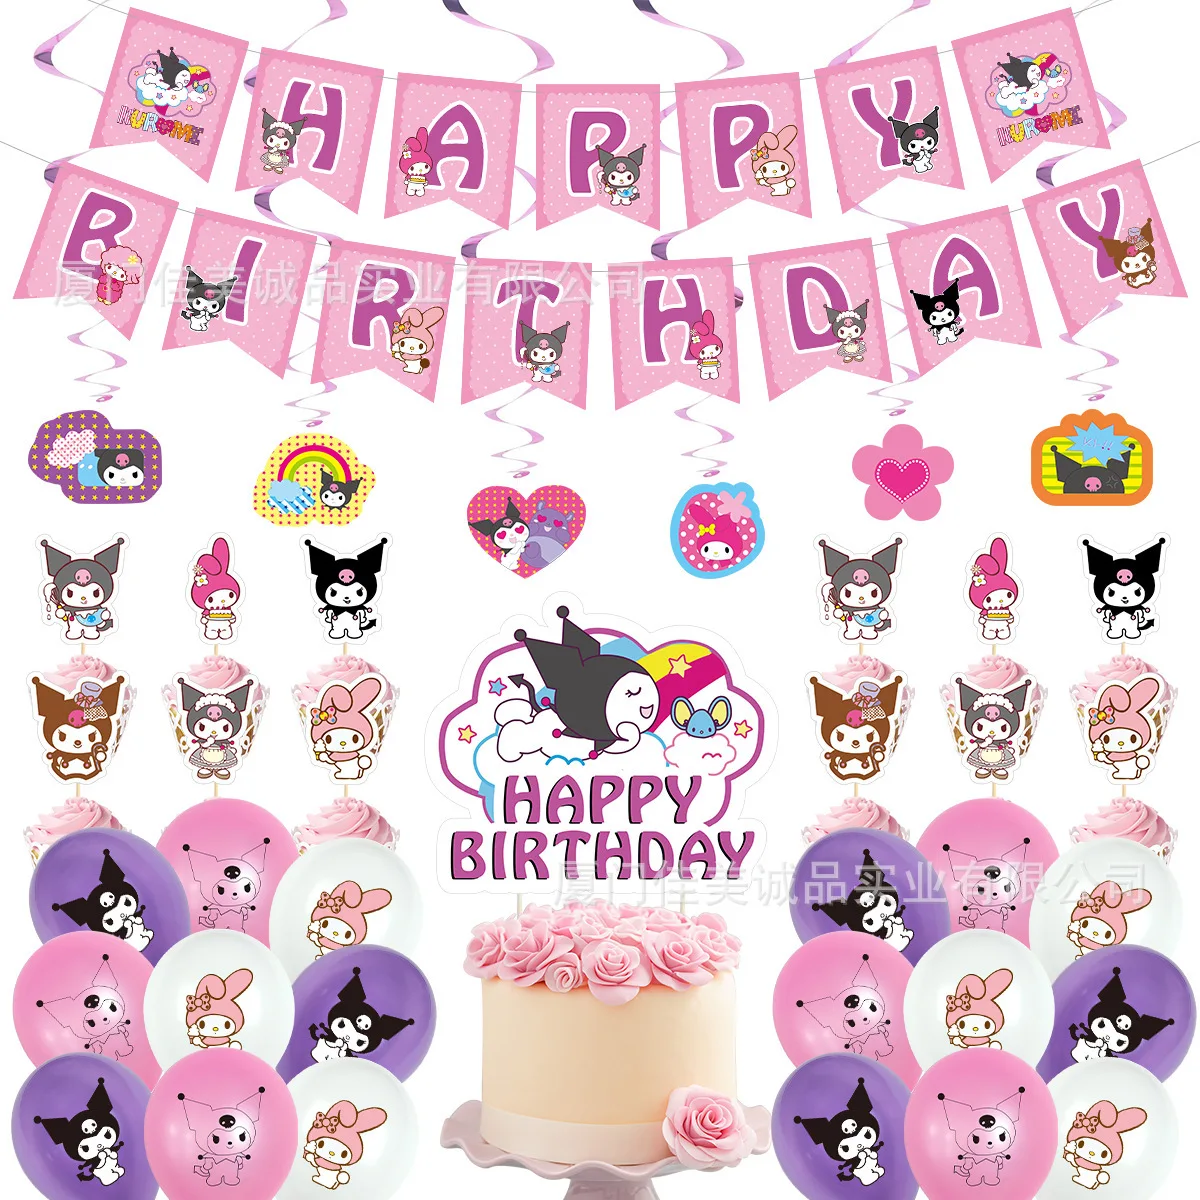 

Мультяшное украшение Kuromi для дня рождения, мелодия, милая розовая девочка, баннер, Натяжной флаг, воздушные шары, игрушки, хобби, праздничный...